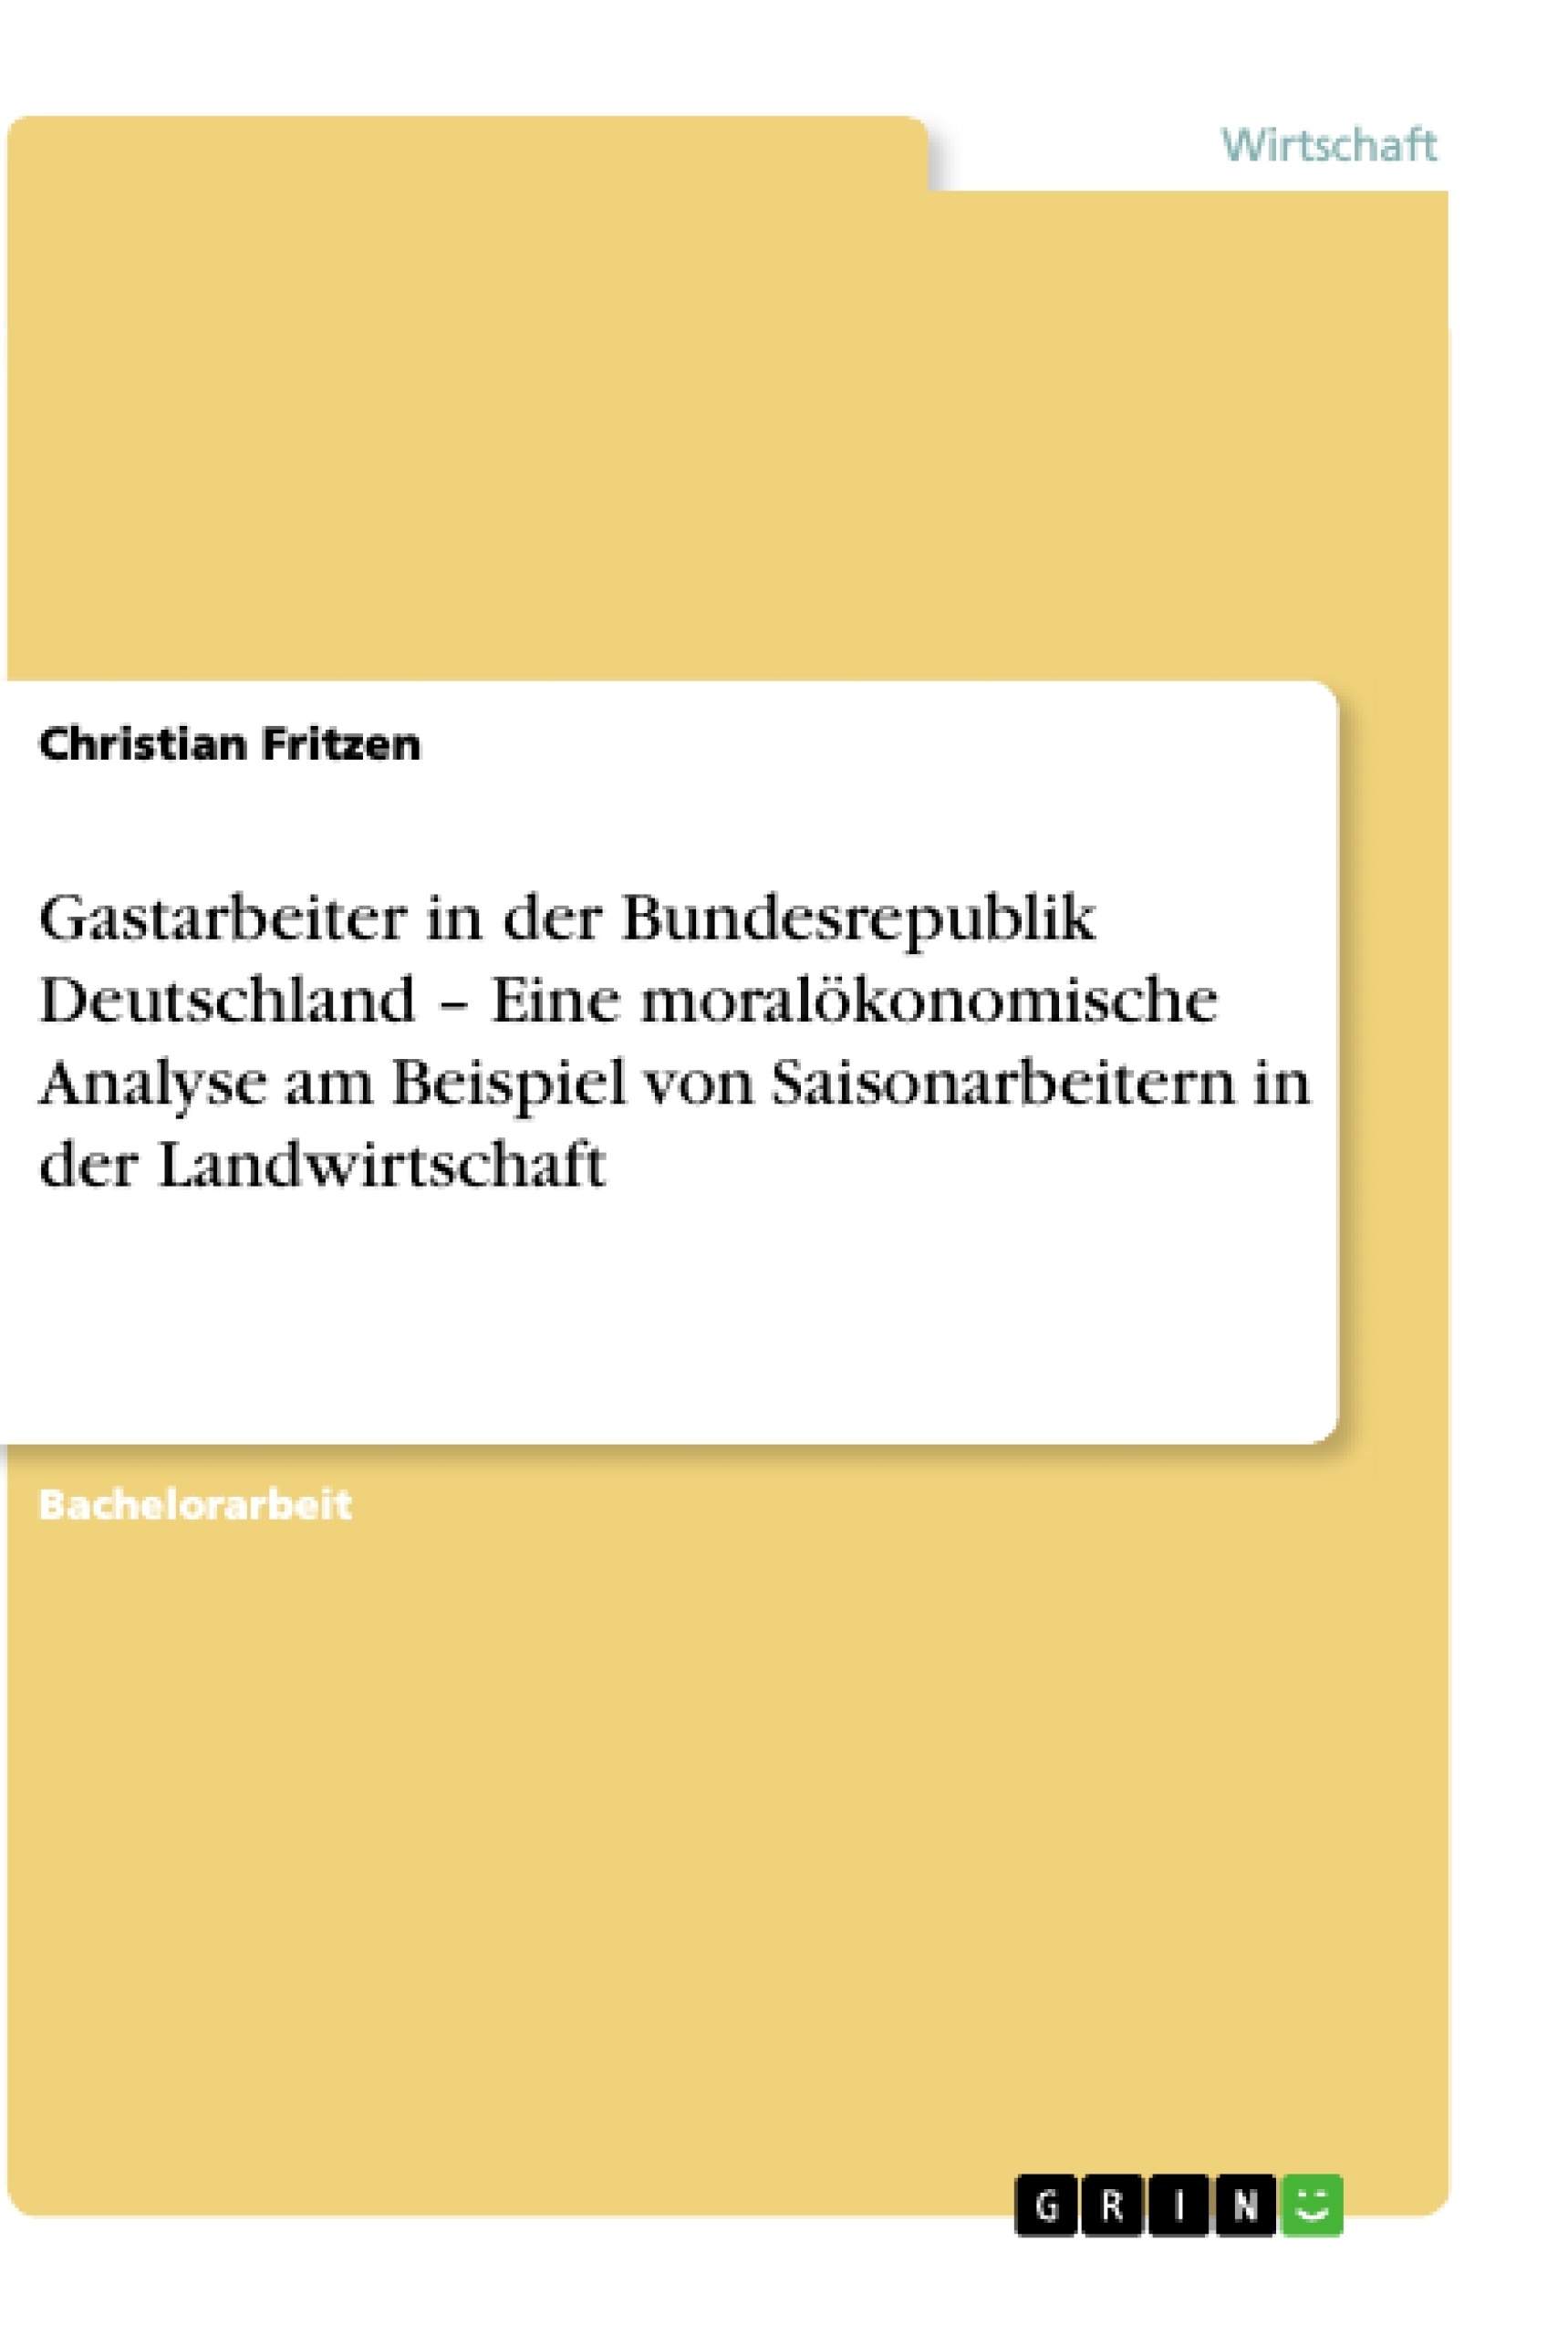 Title: Gastarbeiter in der Bundesrepublik Deutschland – Eine moralökonomische Analyse am Beispiel von Saisonarbeitern in der Landwirtschaft